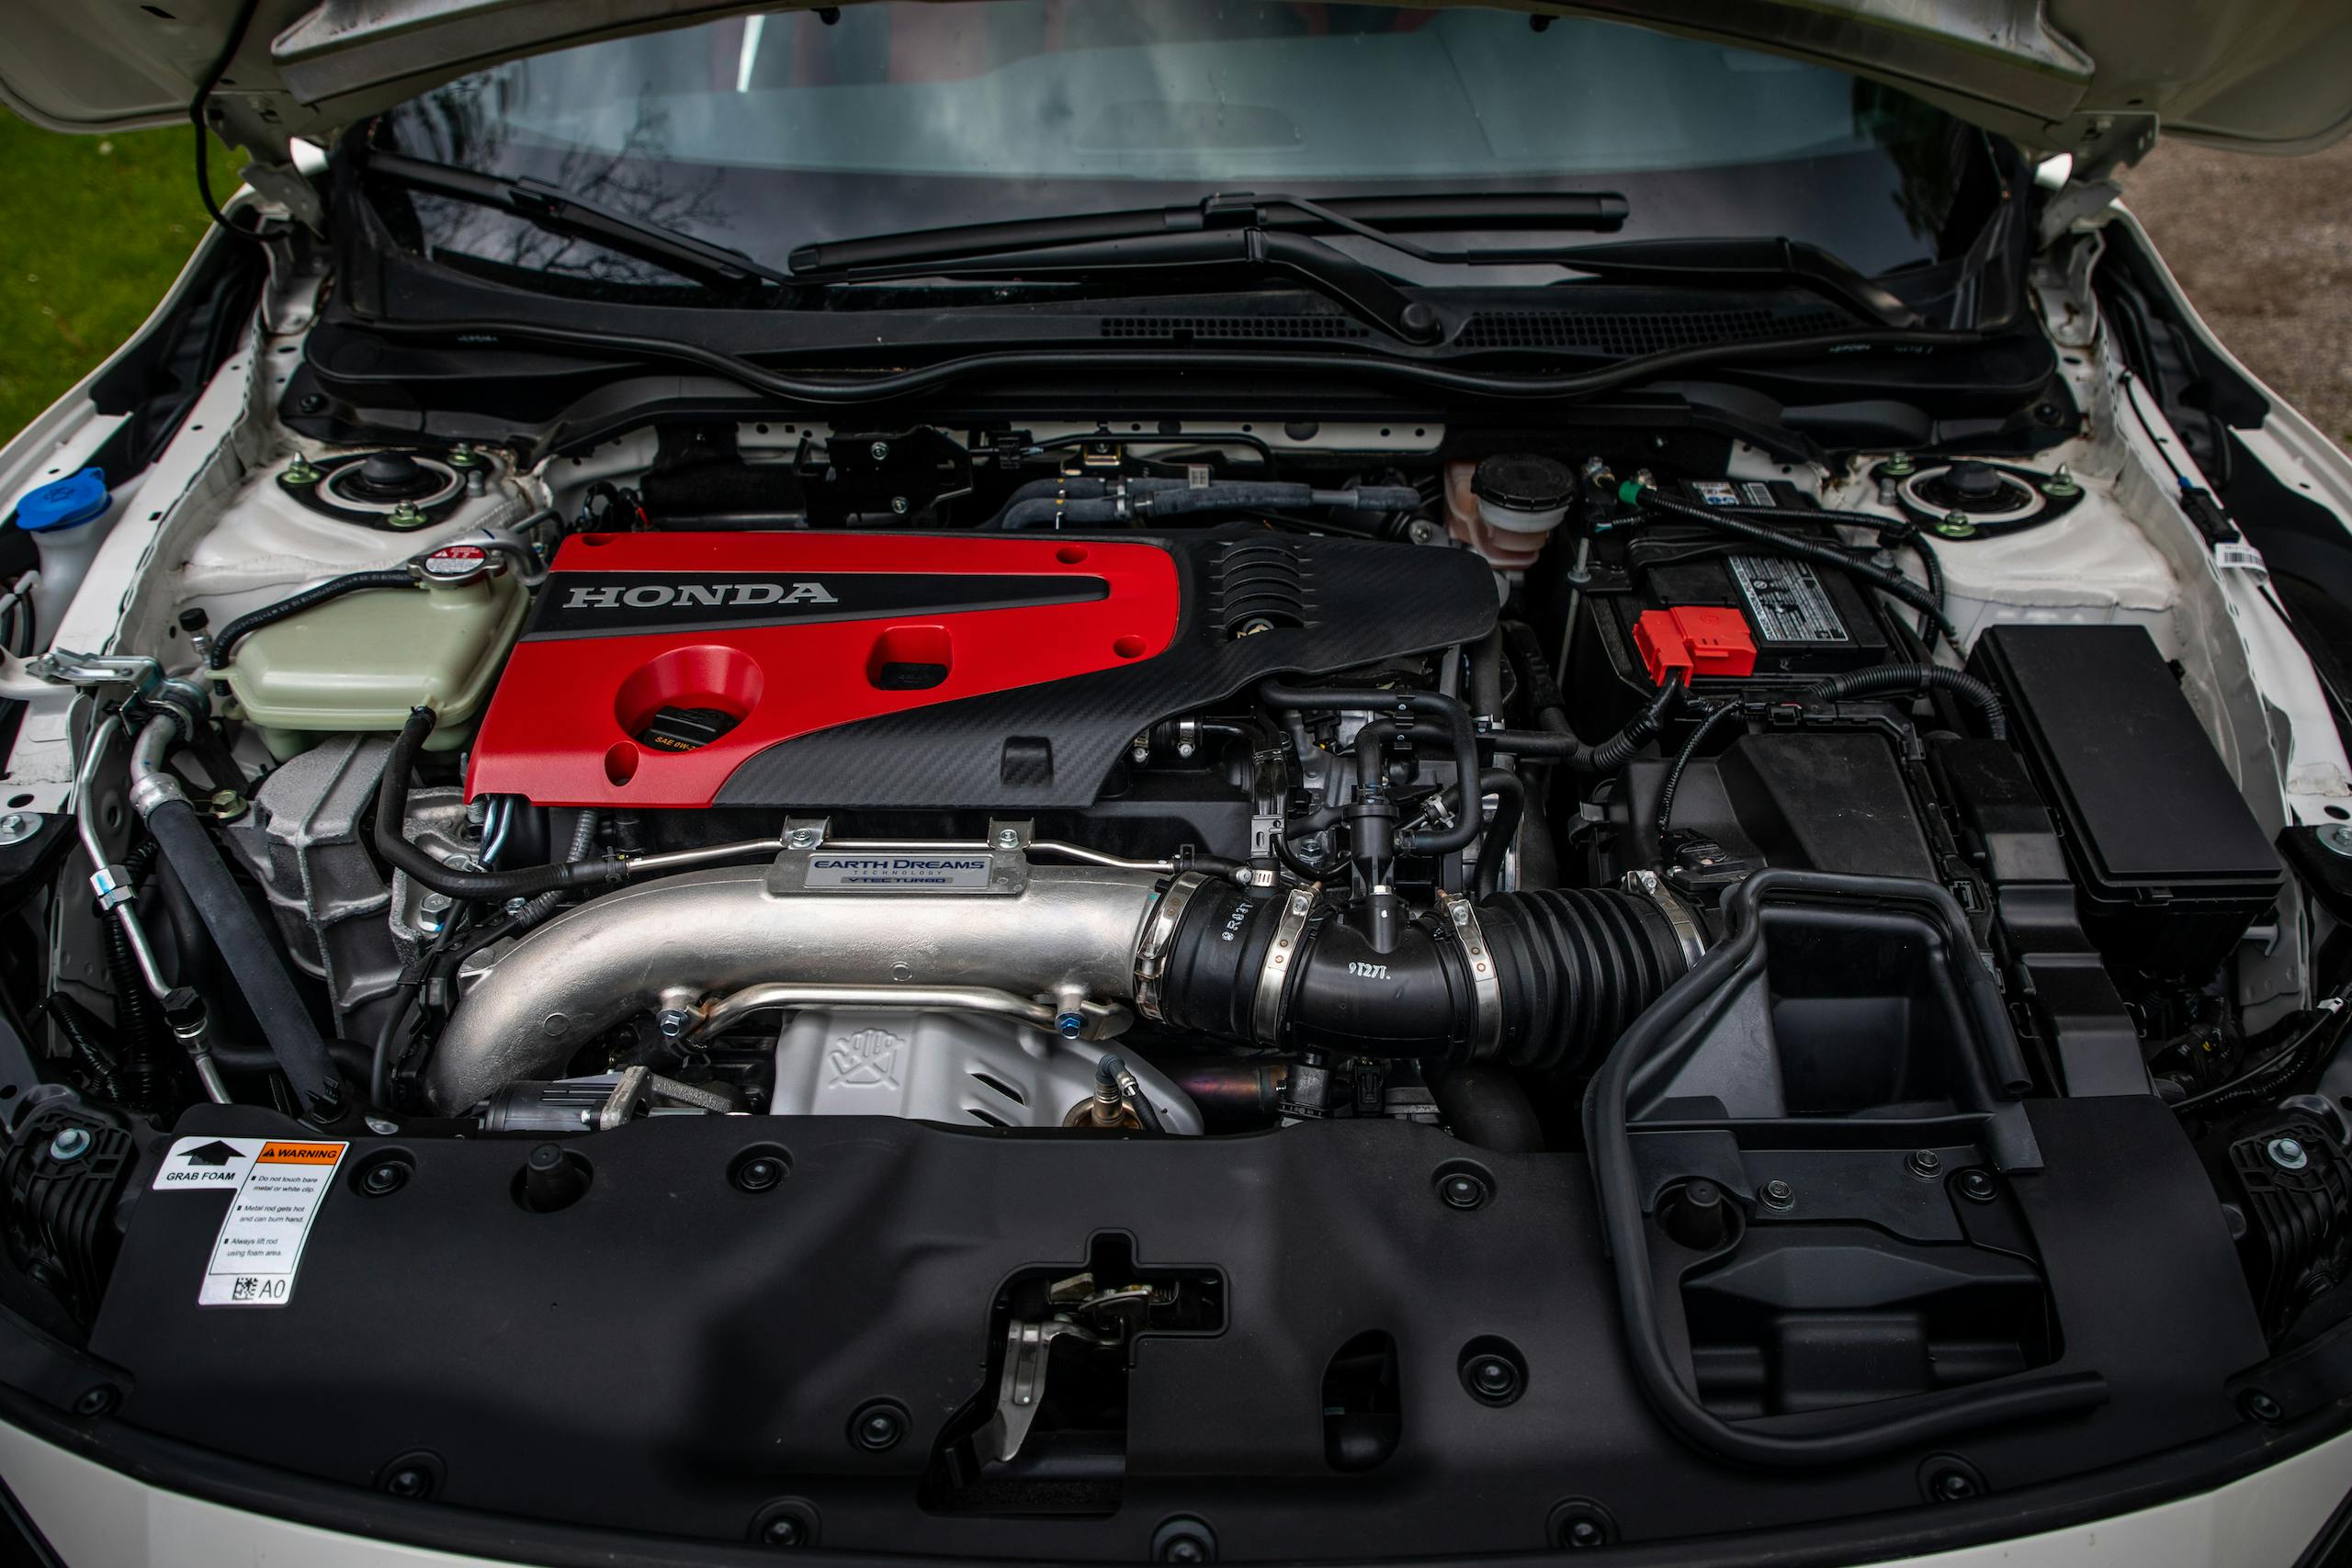 2020 Honda Civic Type R engine bay